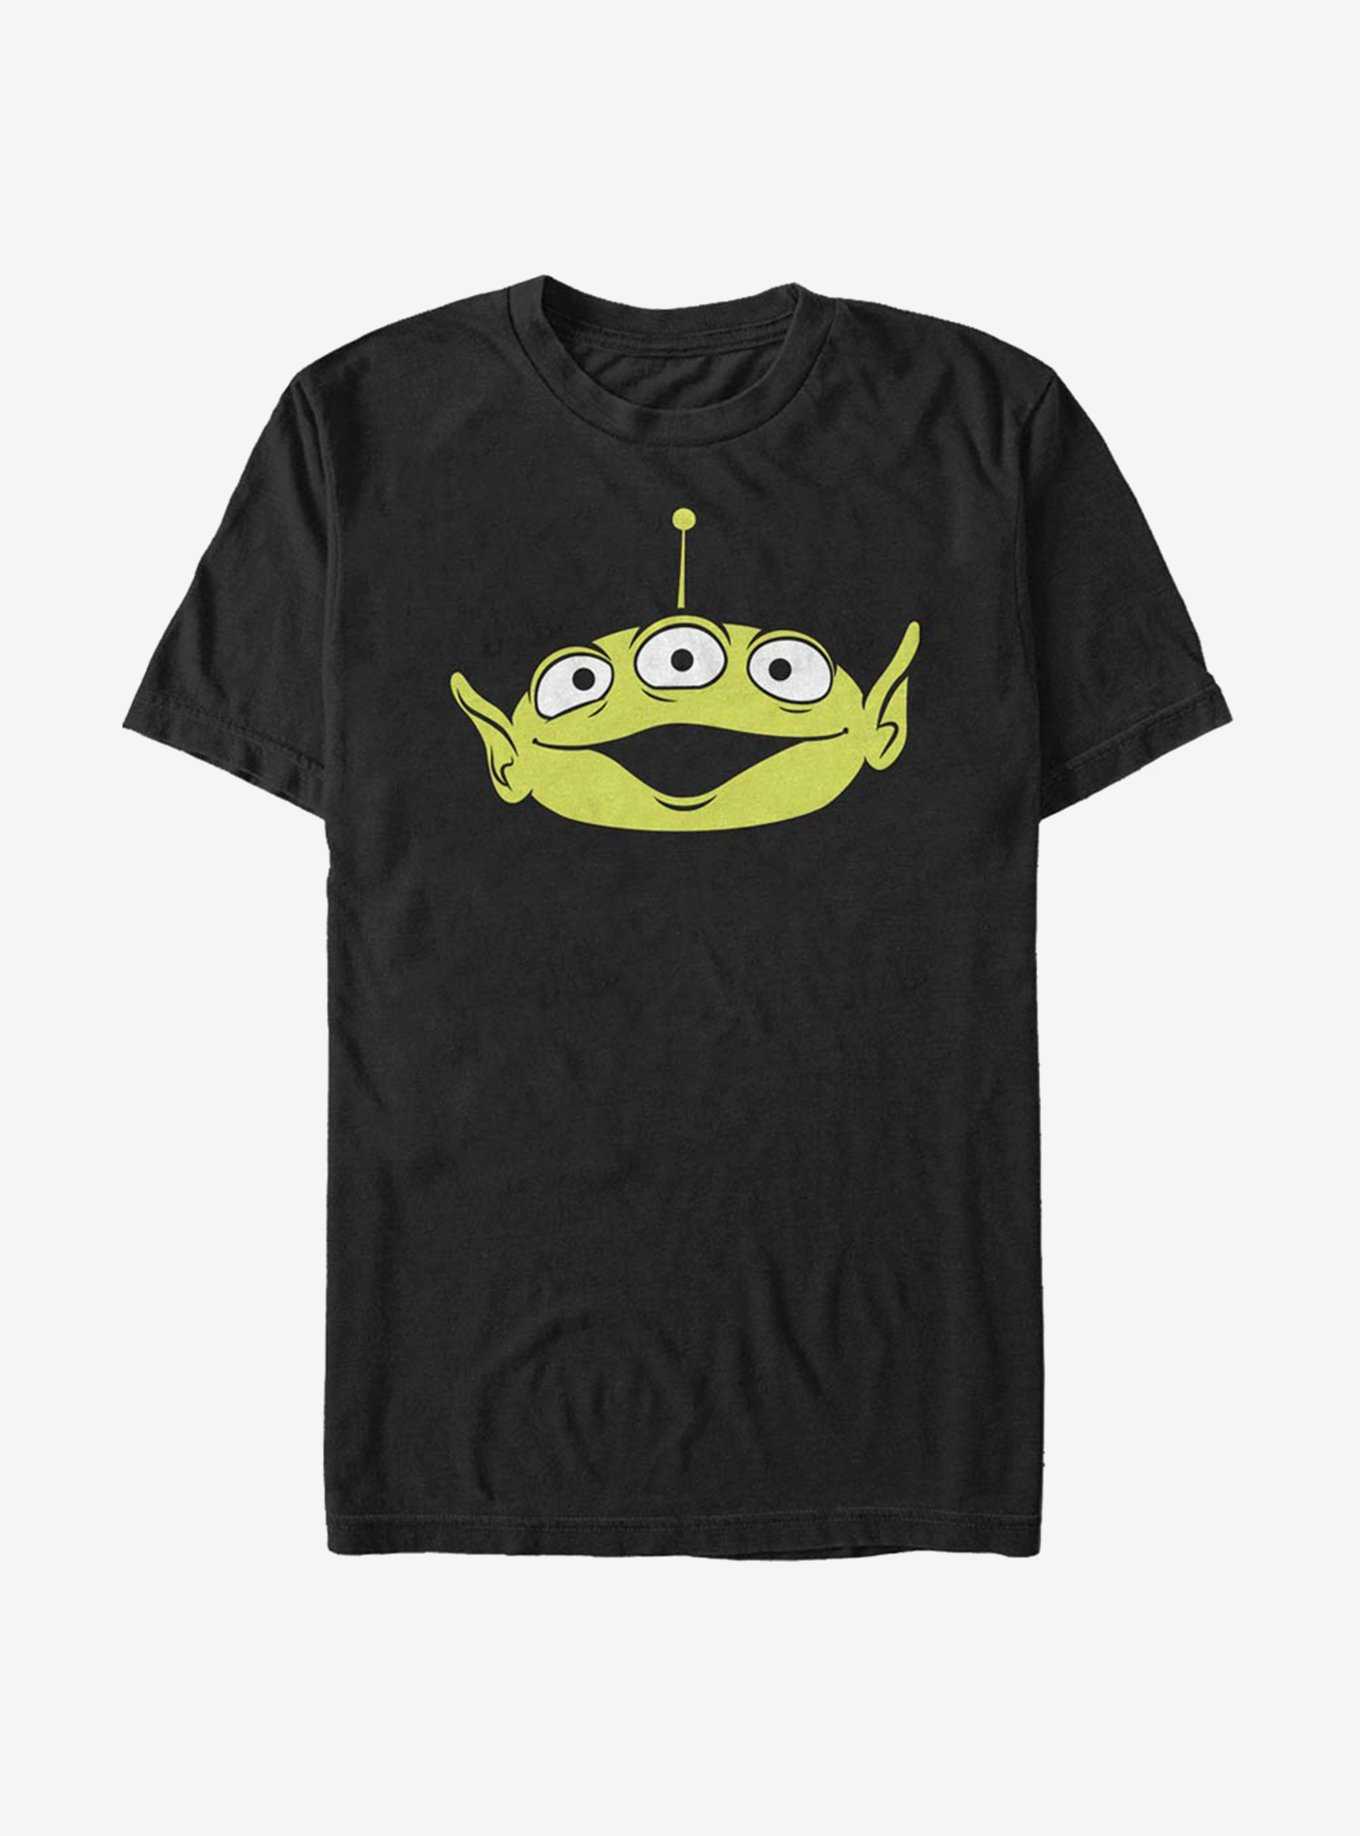 Disney Pixar Toy Story Alien Big Face T-Shirt, , hi-res